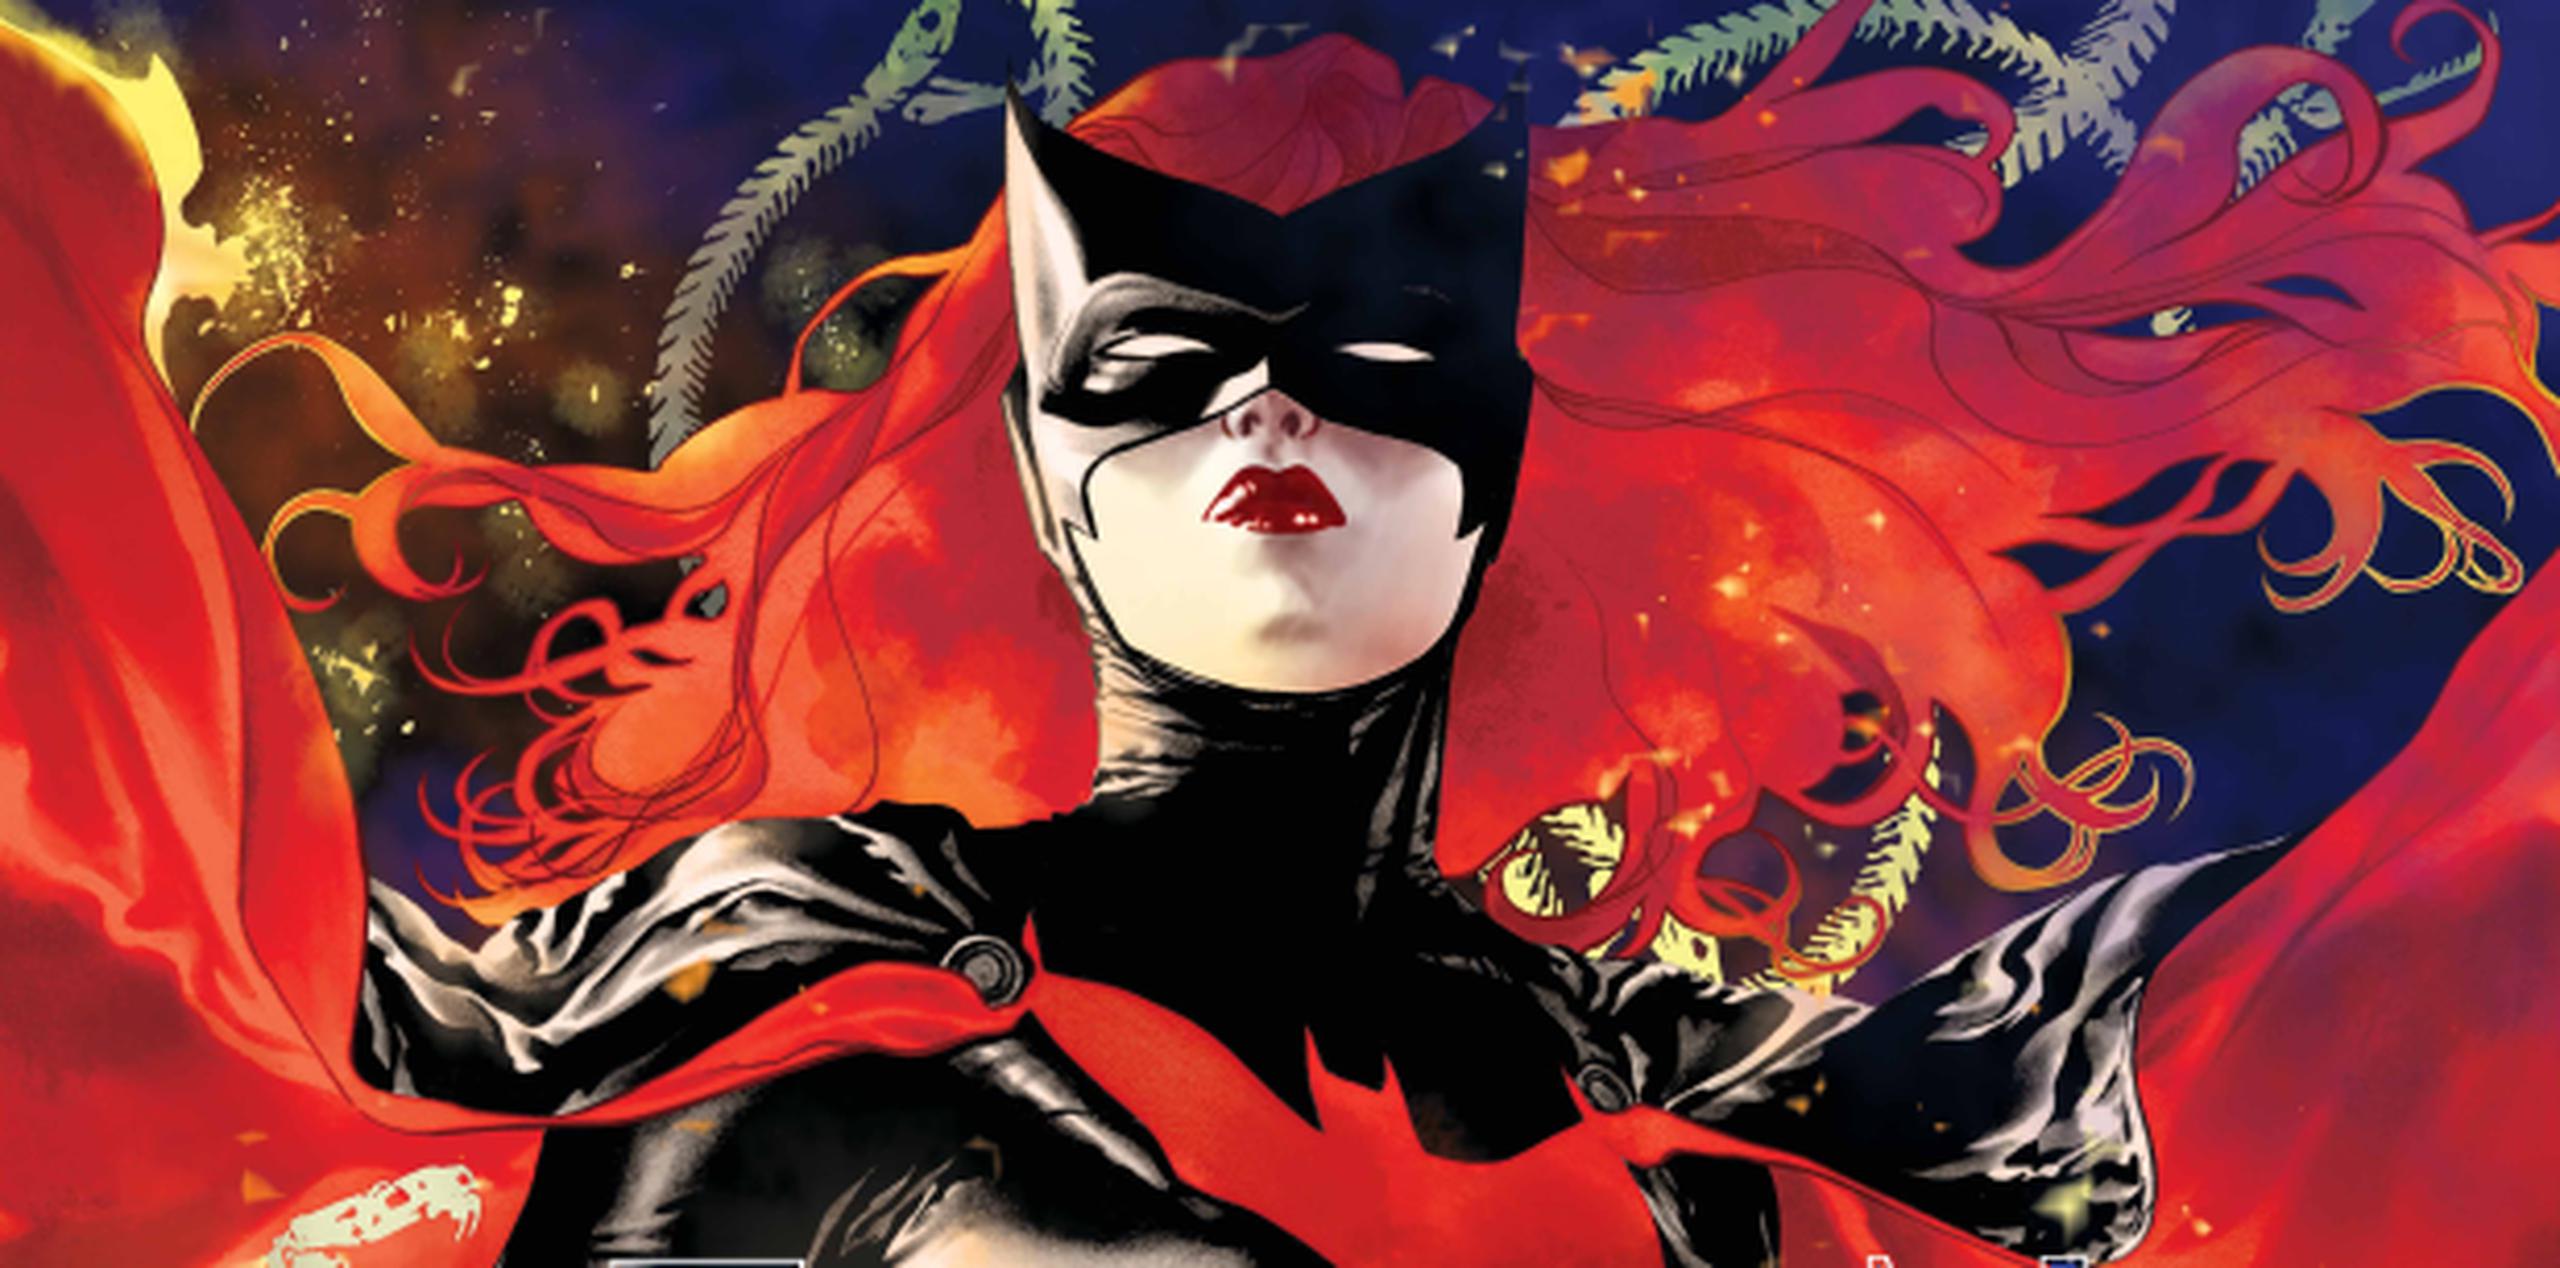 Una inusual mezcla de suspenso y horror enmarcado en un exquisito arte y llamativas portadas es parte del éxito de la serie Batwoman.